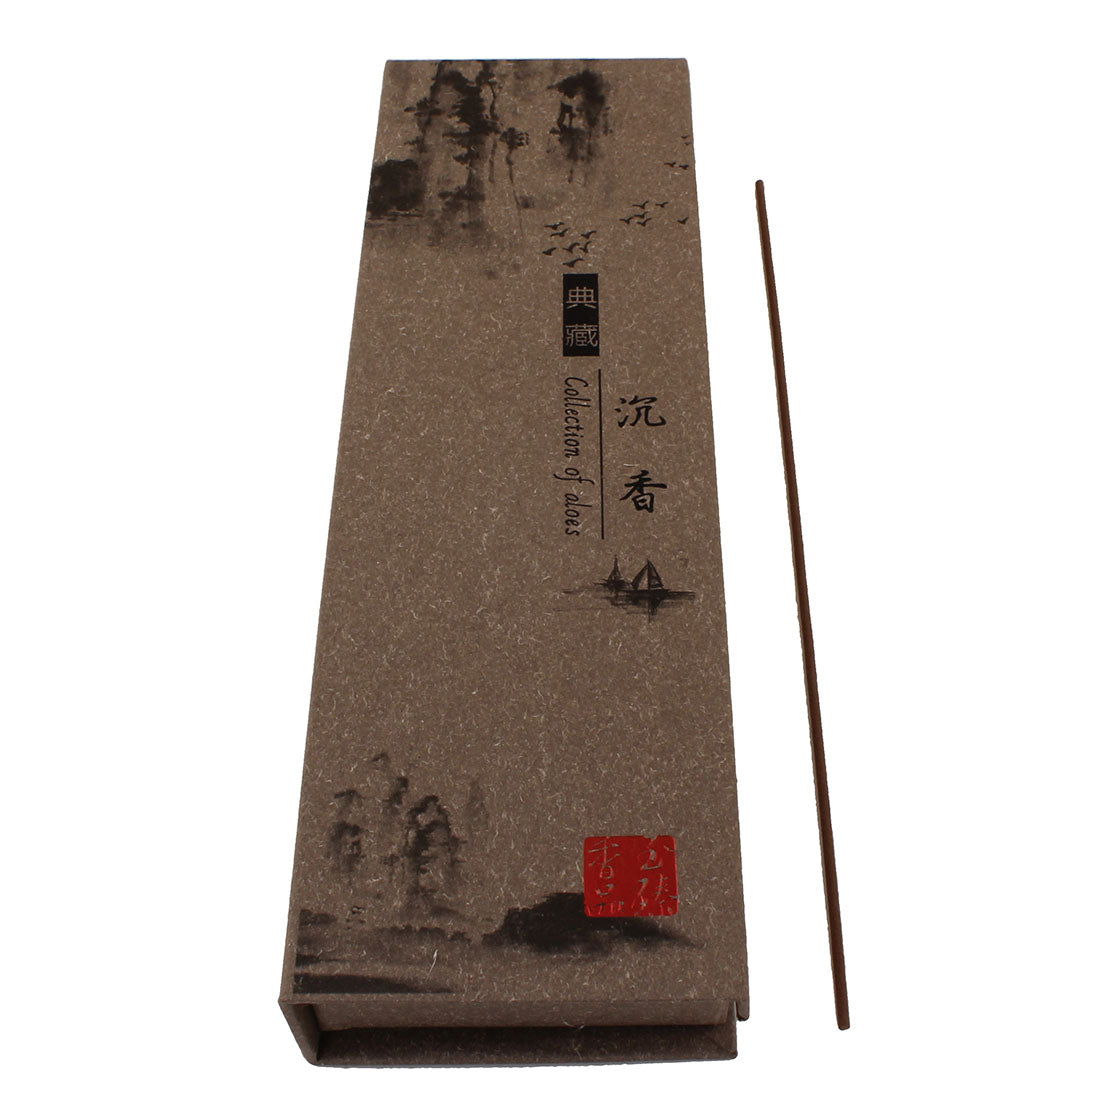 Pack of Incense Sticks - Eaglewood